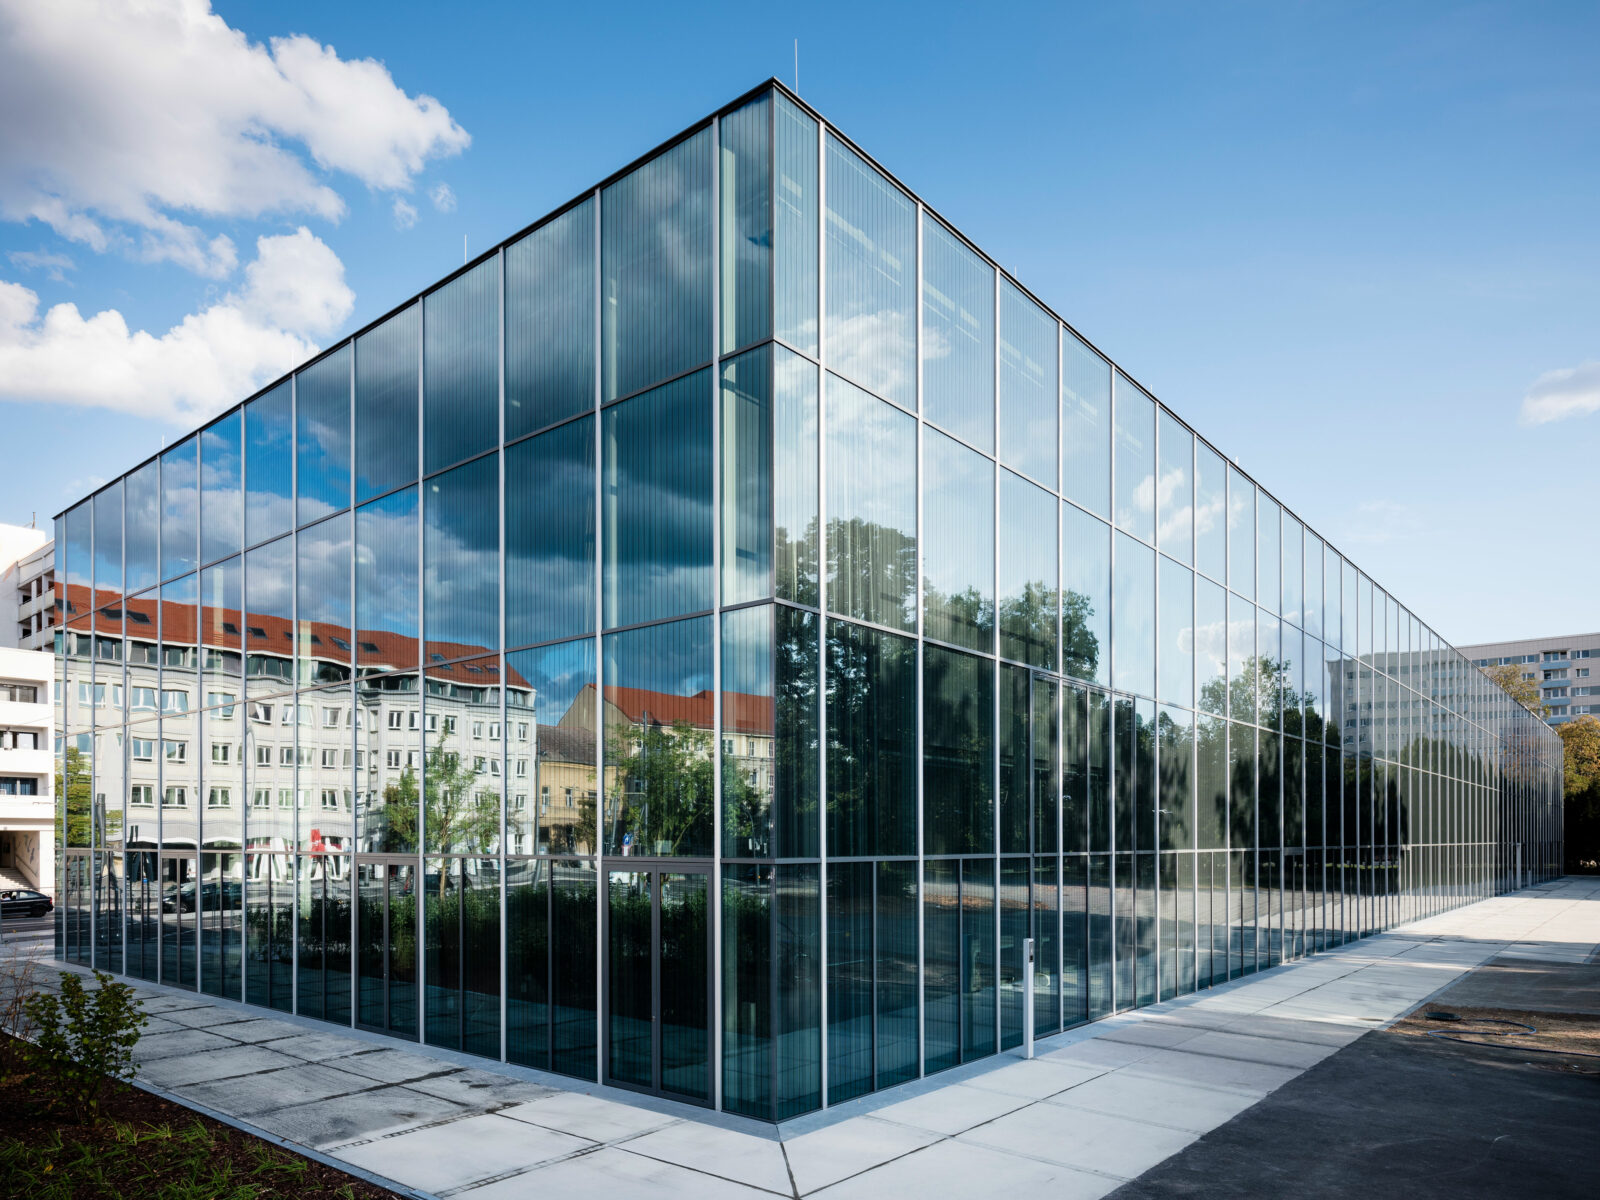 Ecke des Bauhaus Museums Dessau. In der Glasfassade spiegelt sich die Umgebung.